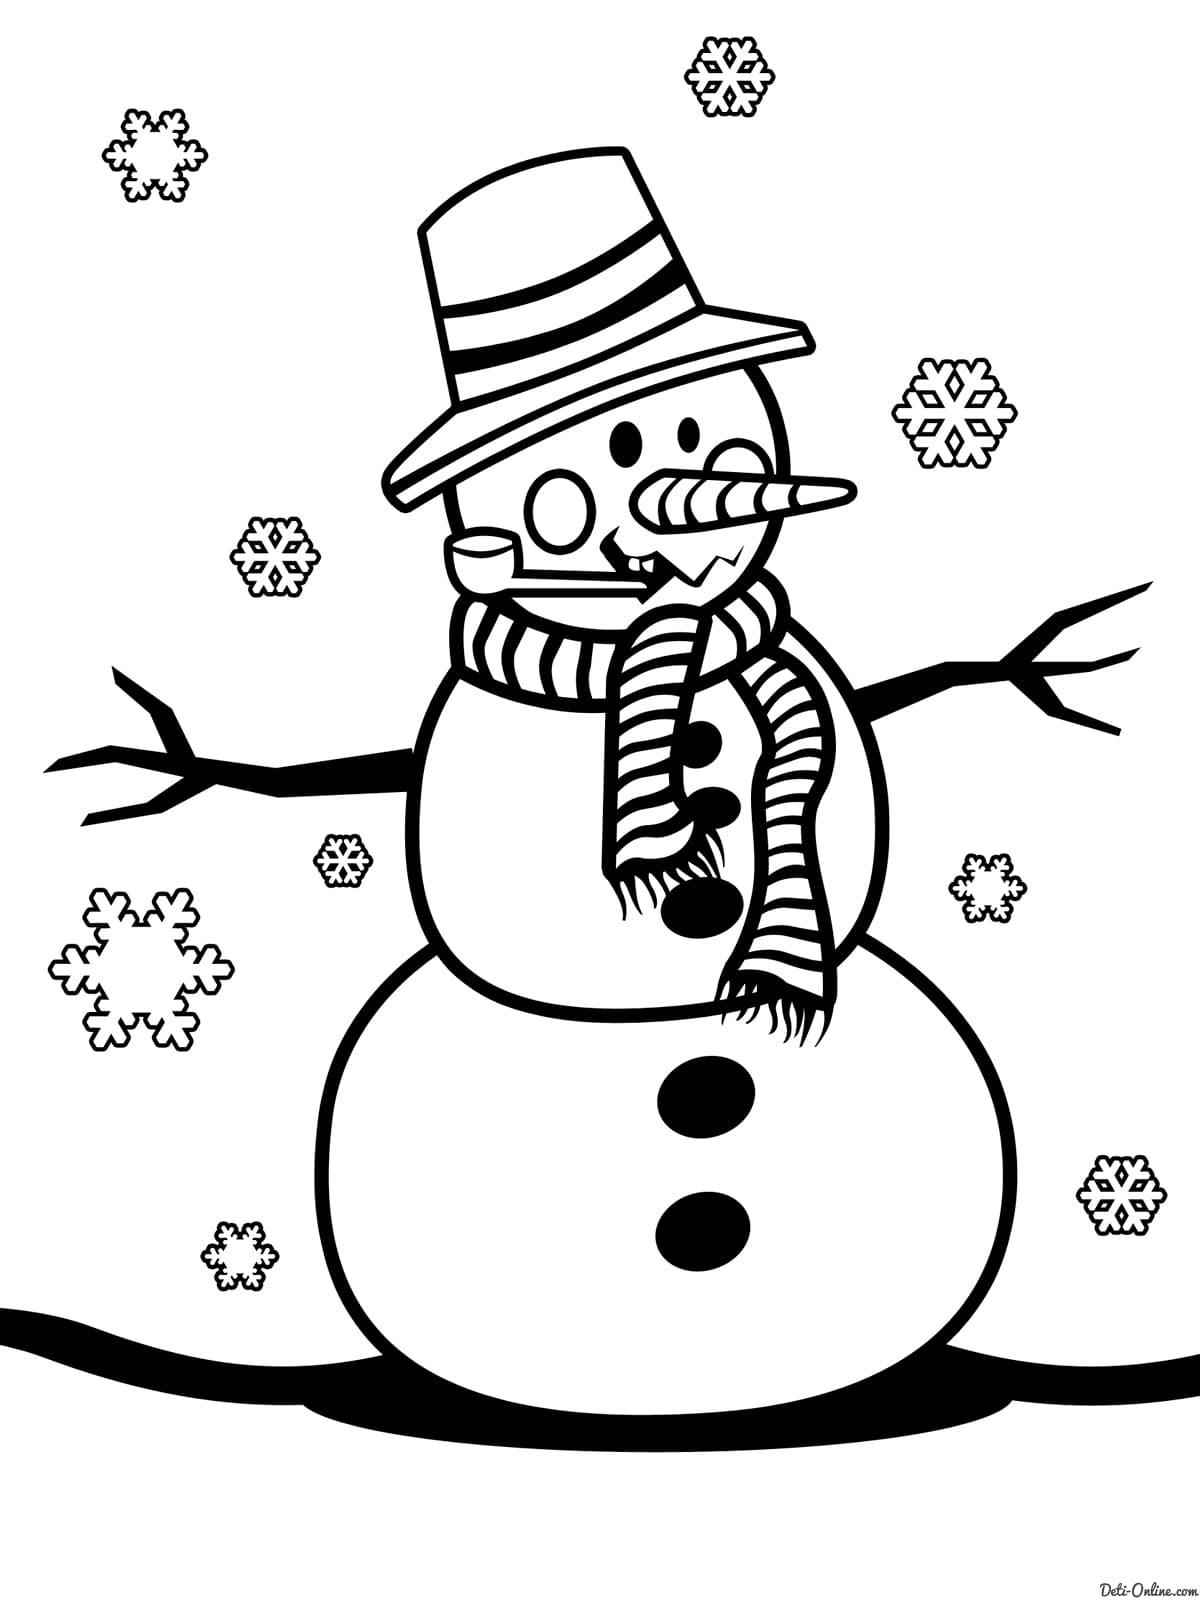 Снеговик с трубкой